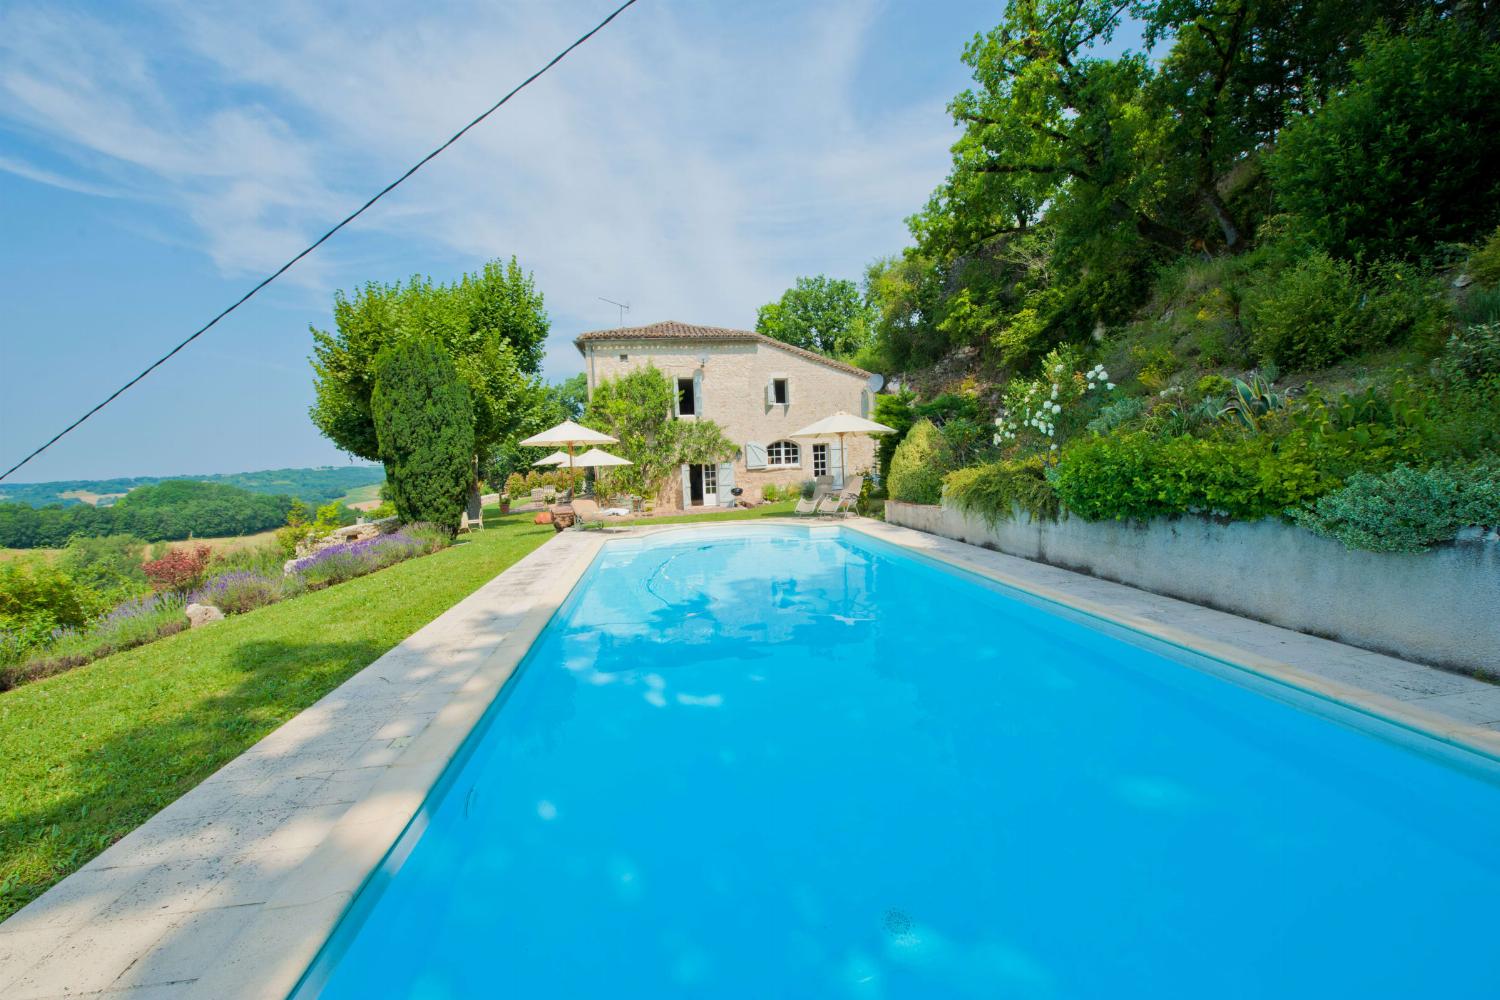 Rental home in Tarn-en-Garonne with private heated pool